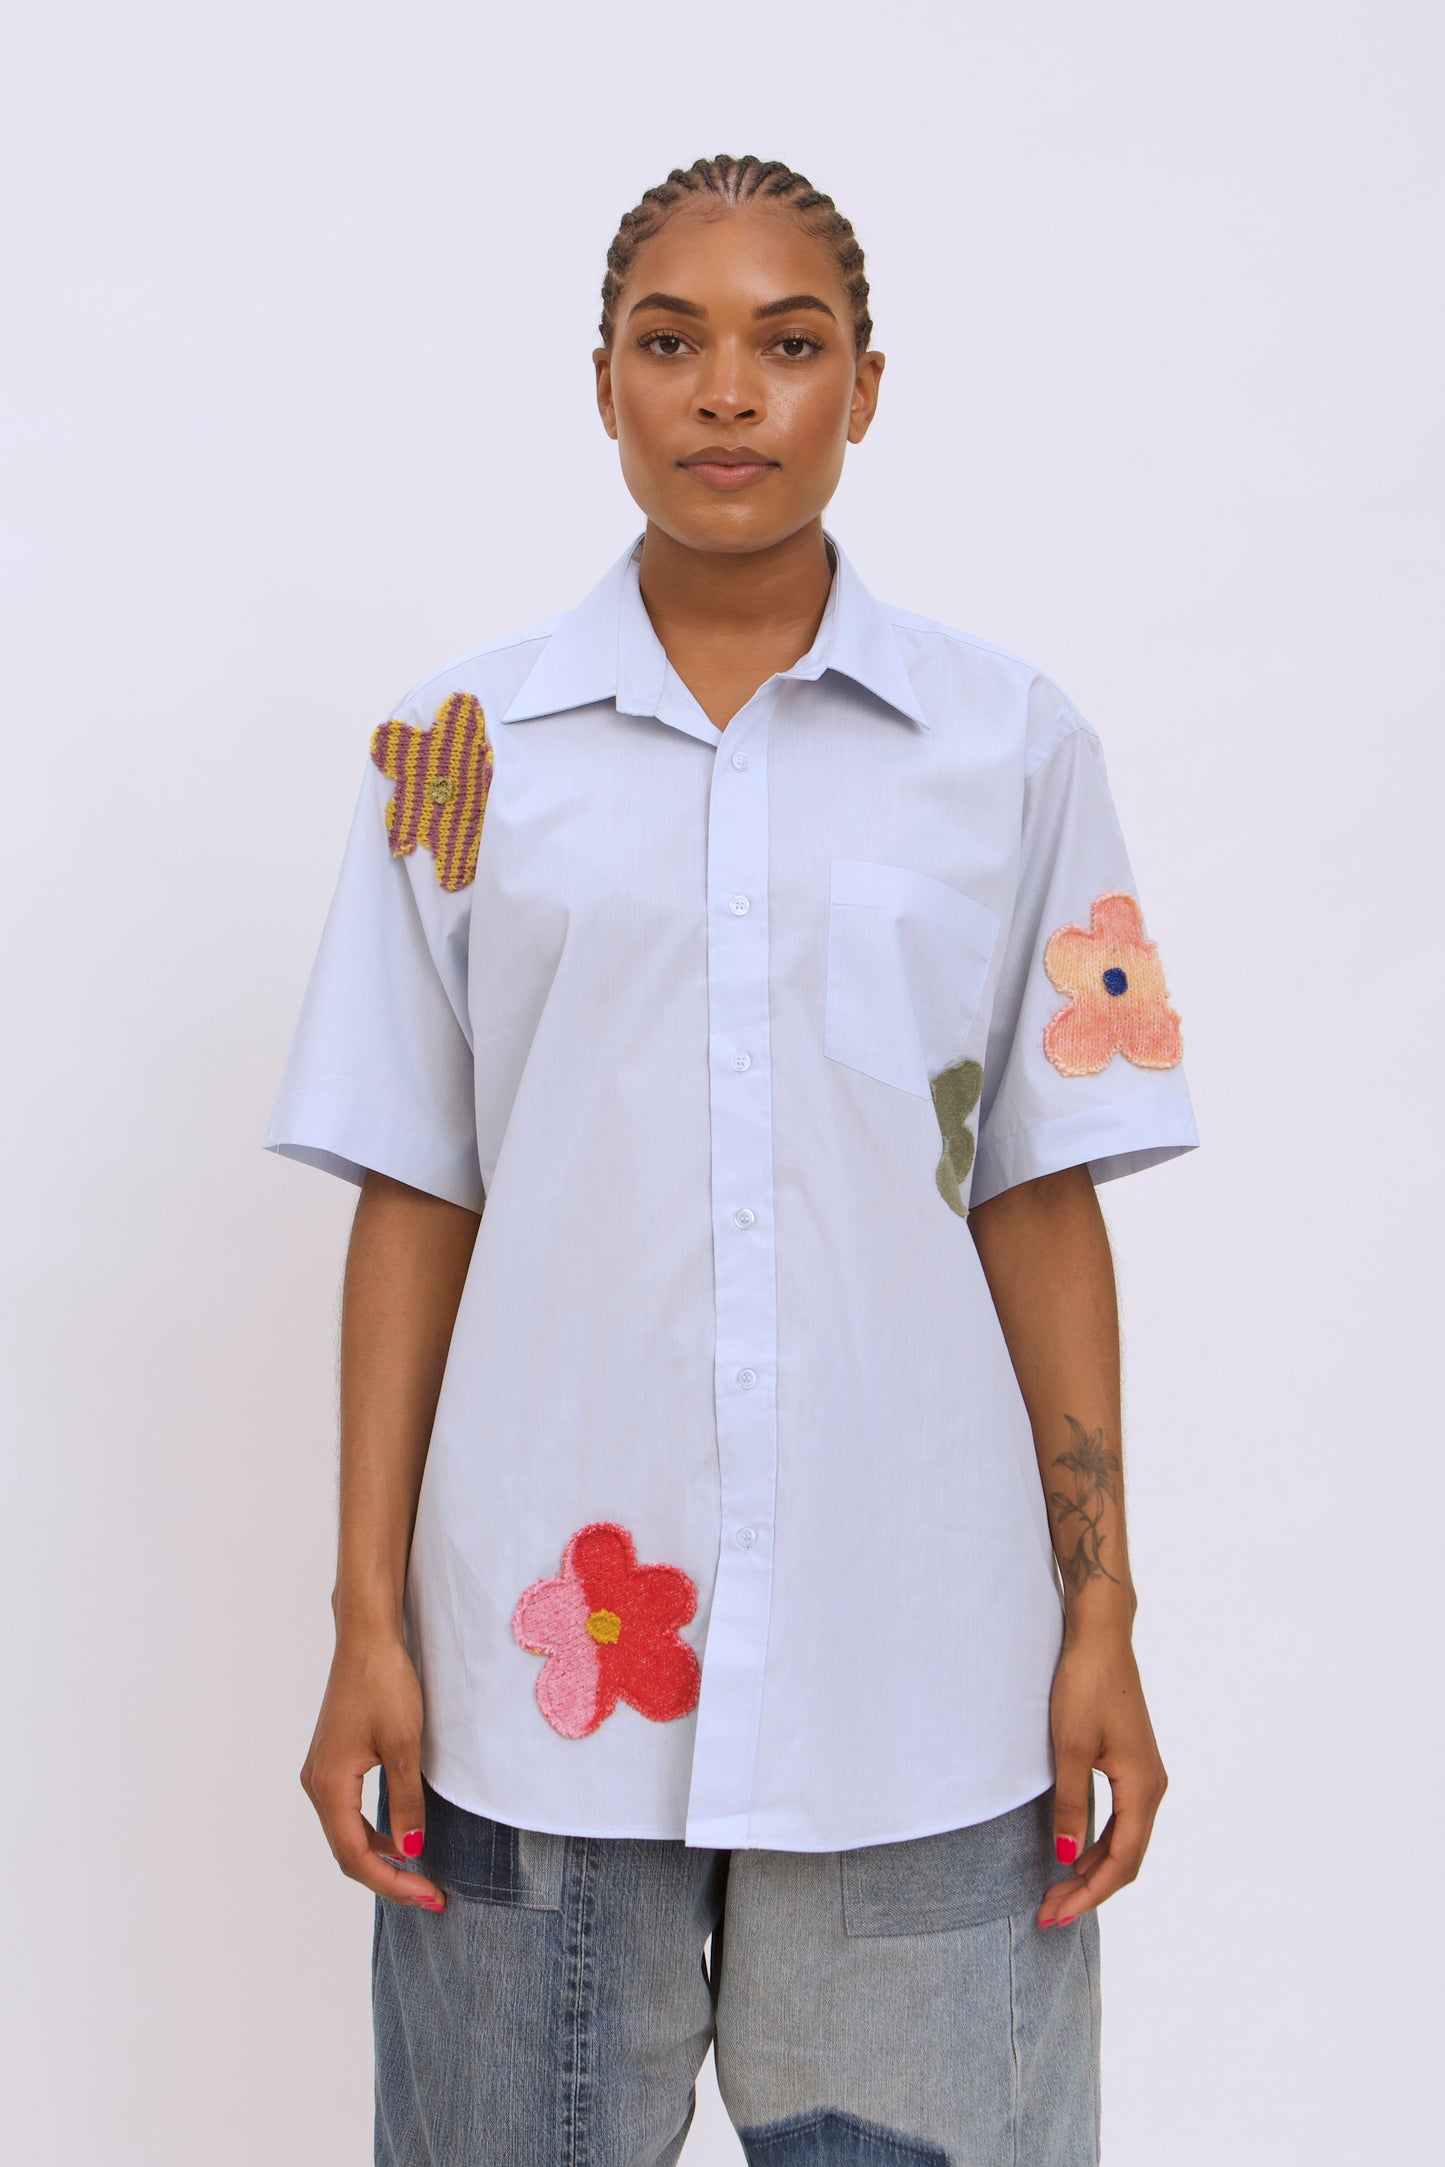 Flower Shirt 003 - L